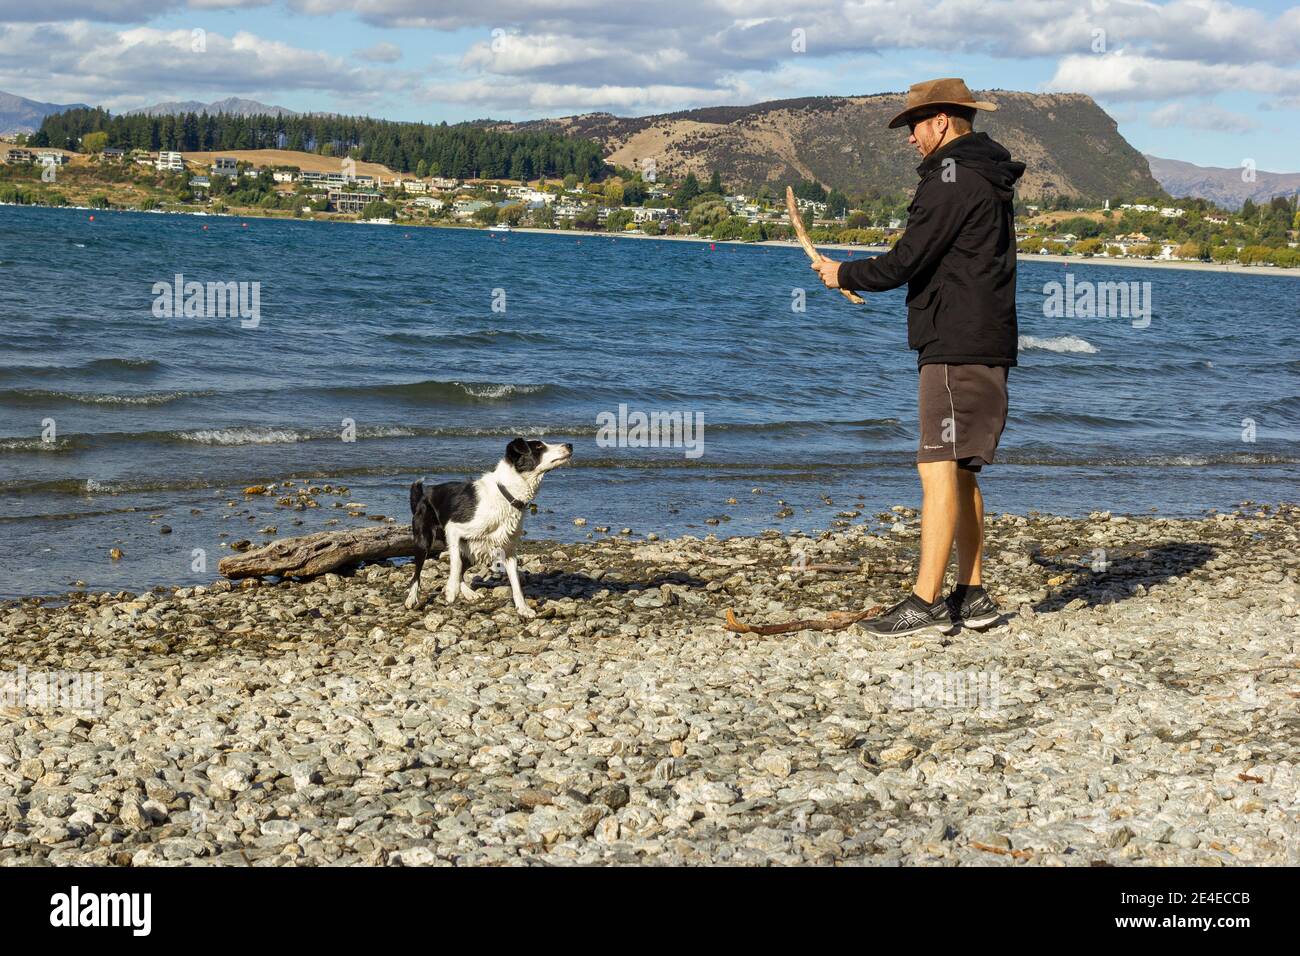 Tiro de un joven con sudaderas con capucha y de pie en la orilla del lago Wanaka con un icónico árbol solitario. Isla Sur de Nueva Zelanda. Foto de stock